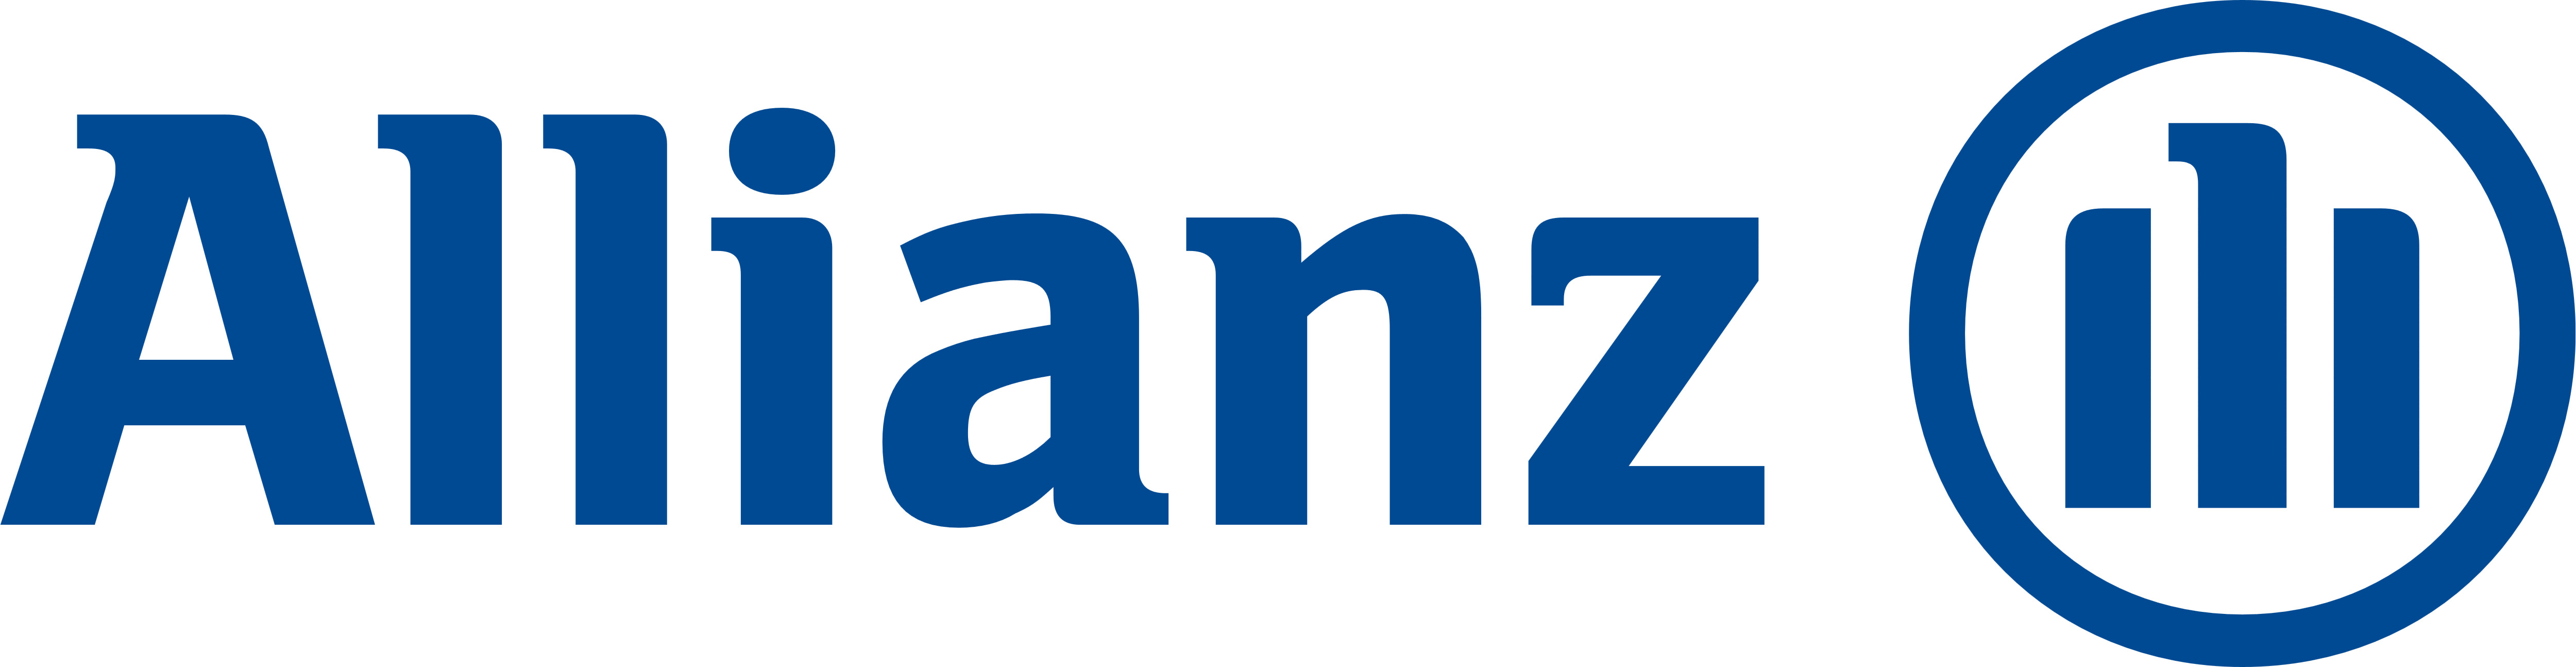 Allianz logo-png